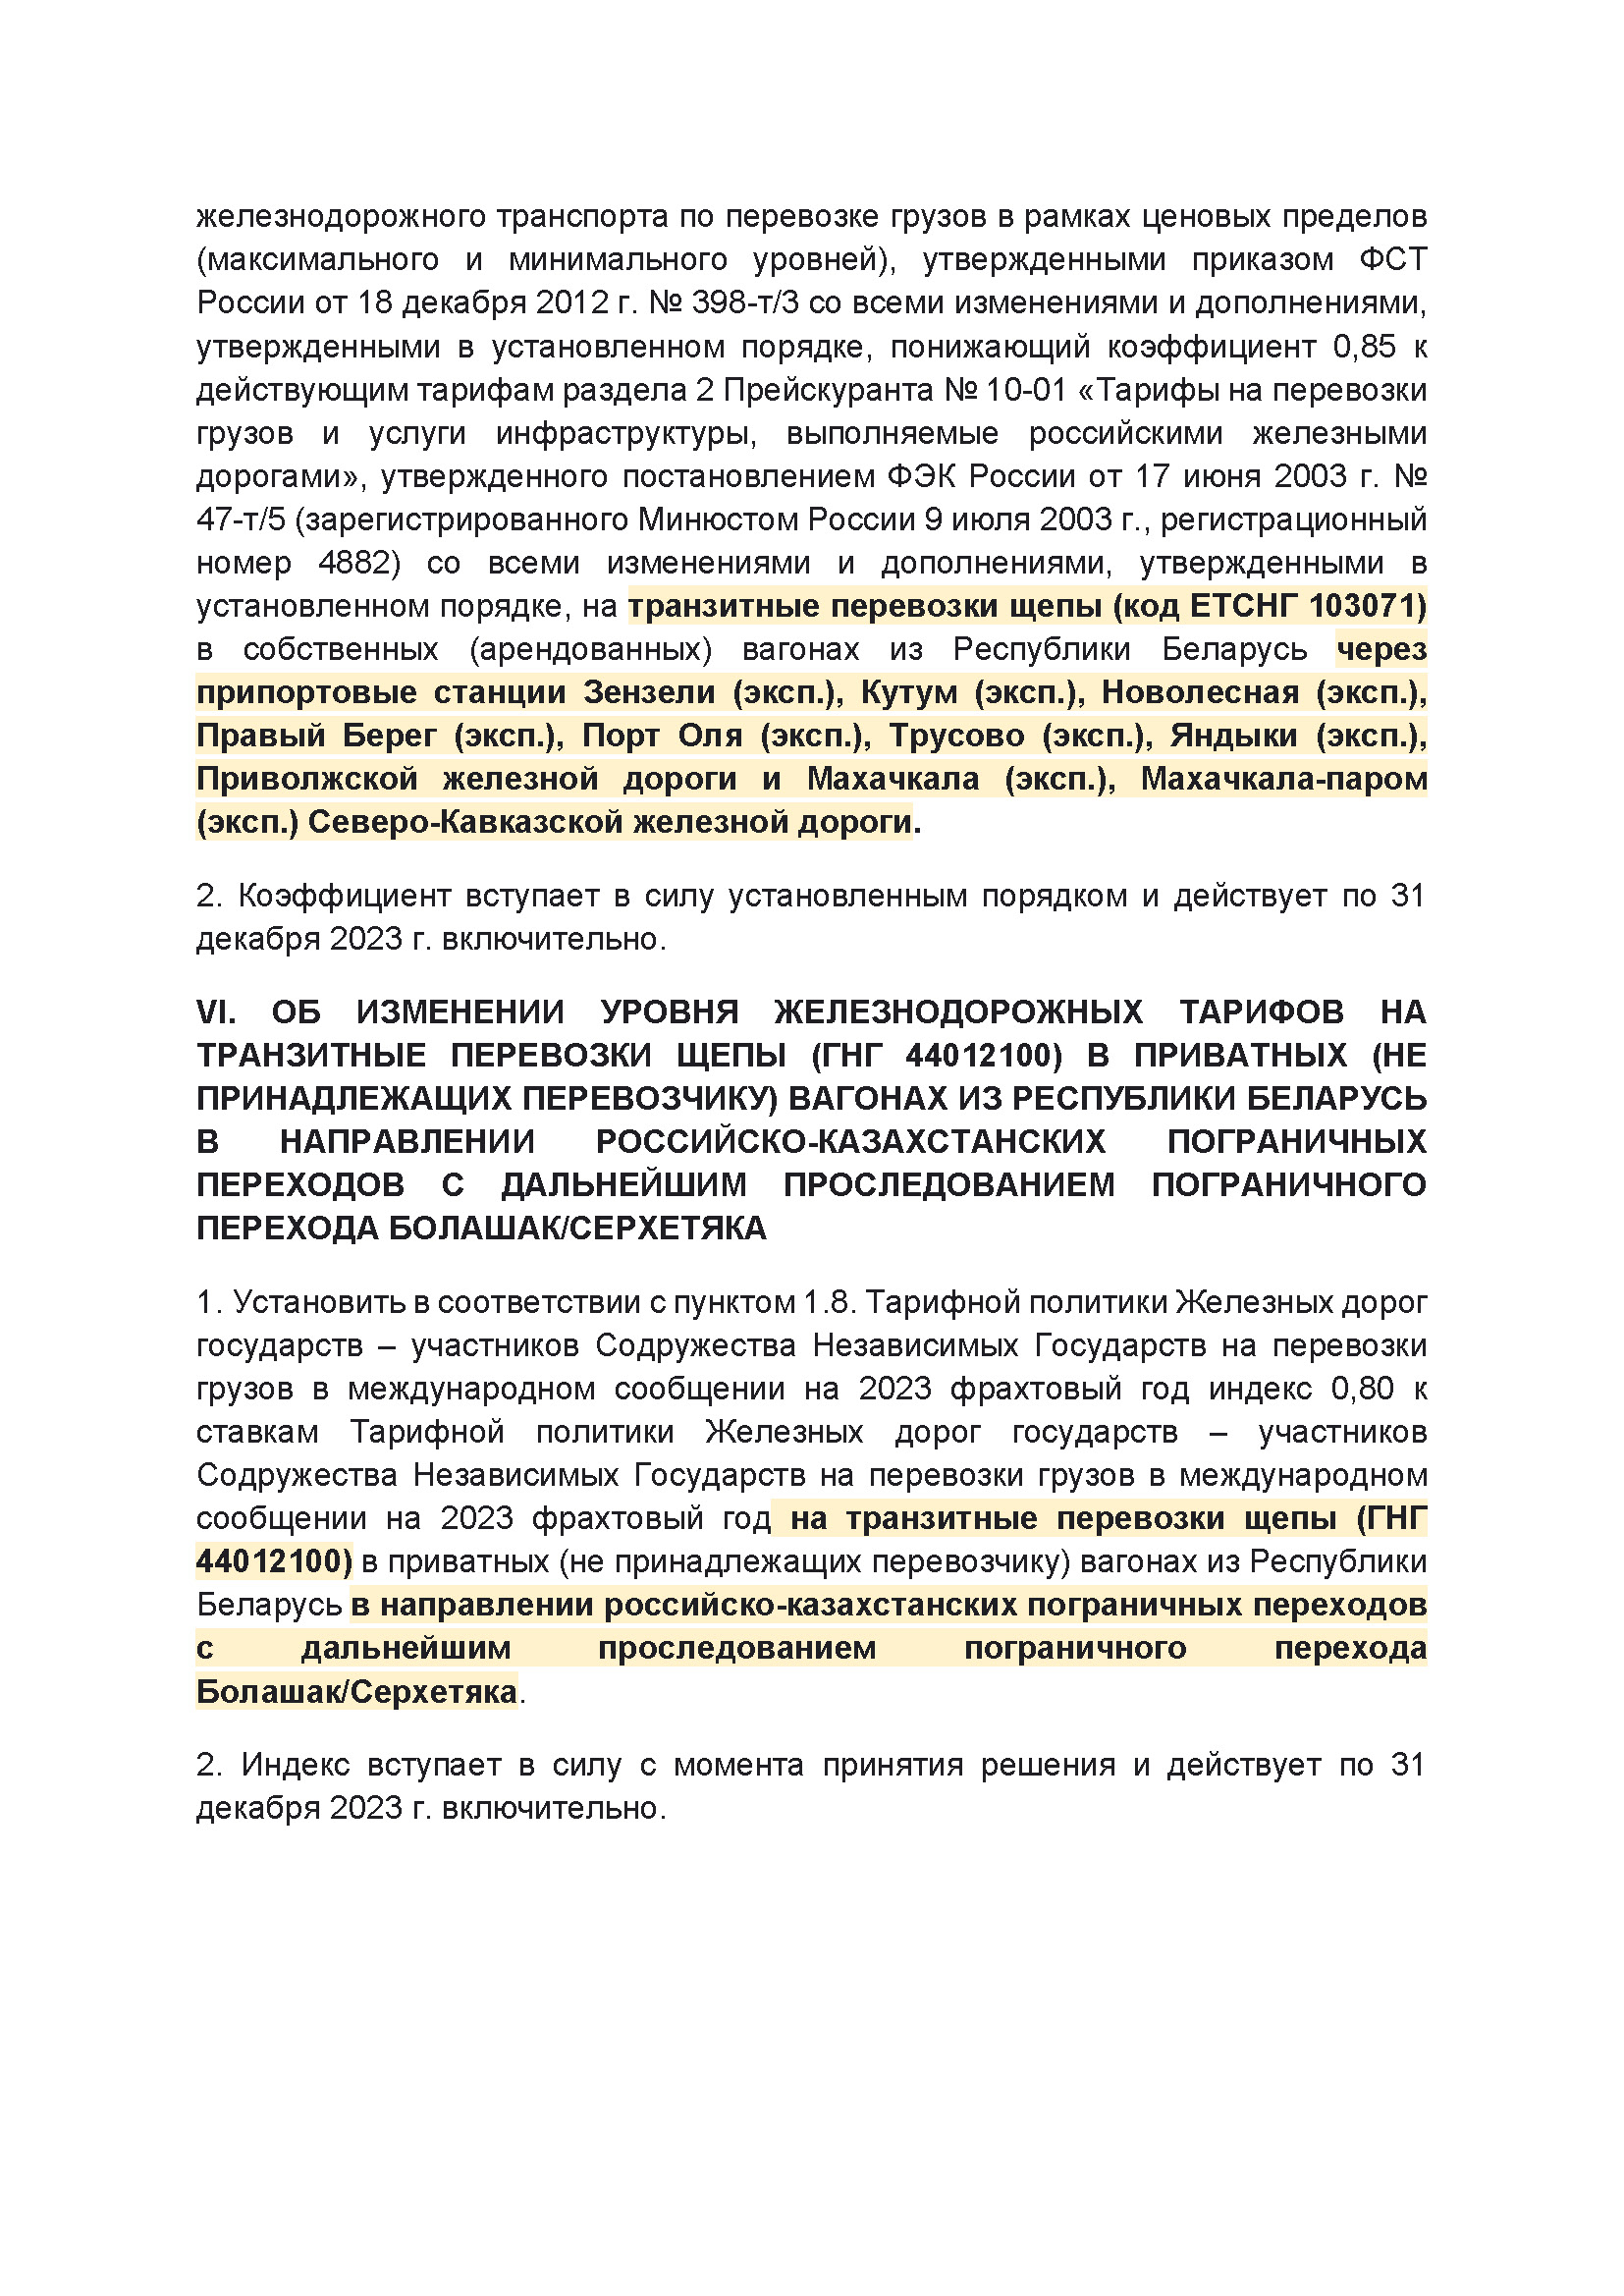 Выписка из протокола заседания правления ОАО РЖД №14 от 21 марта 2023 г. (Страница 4)